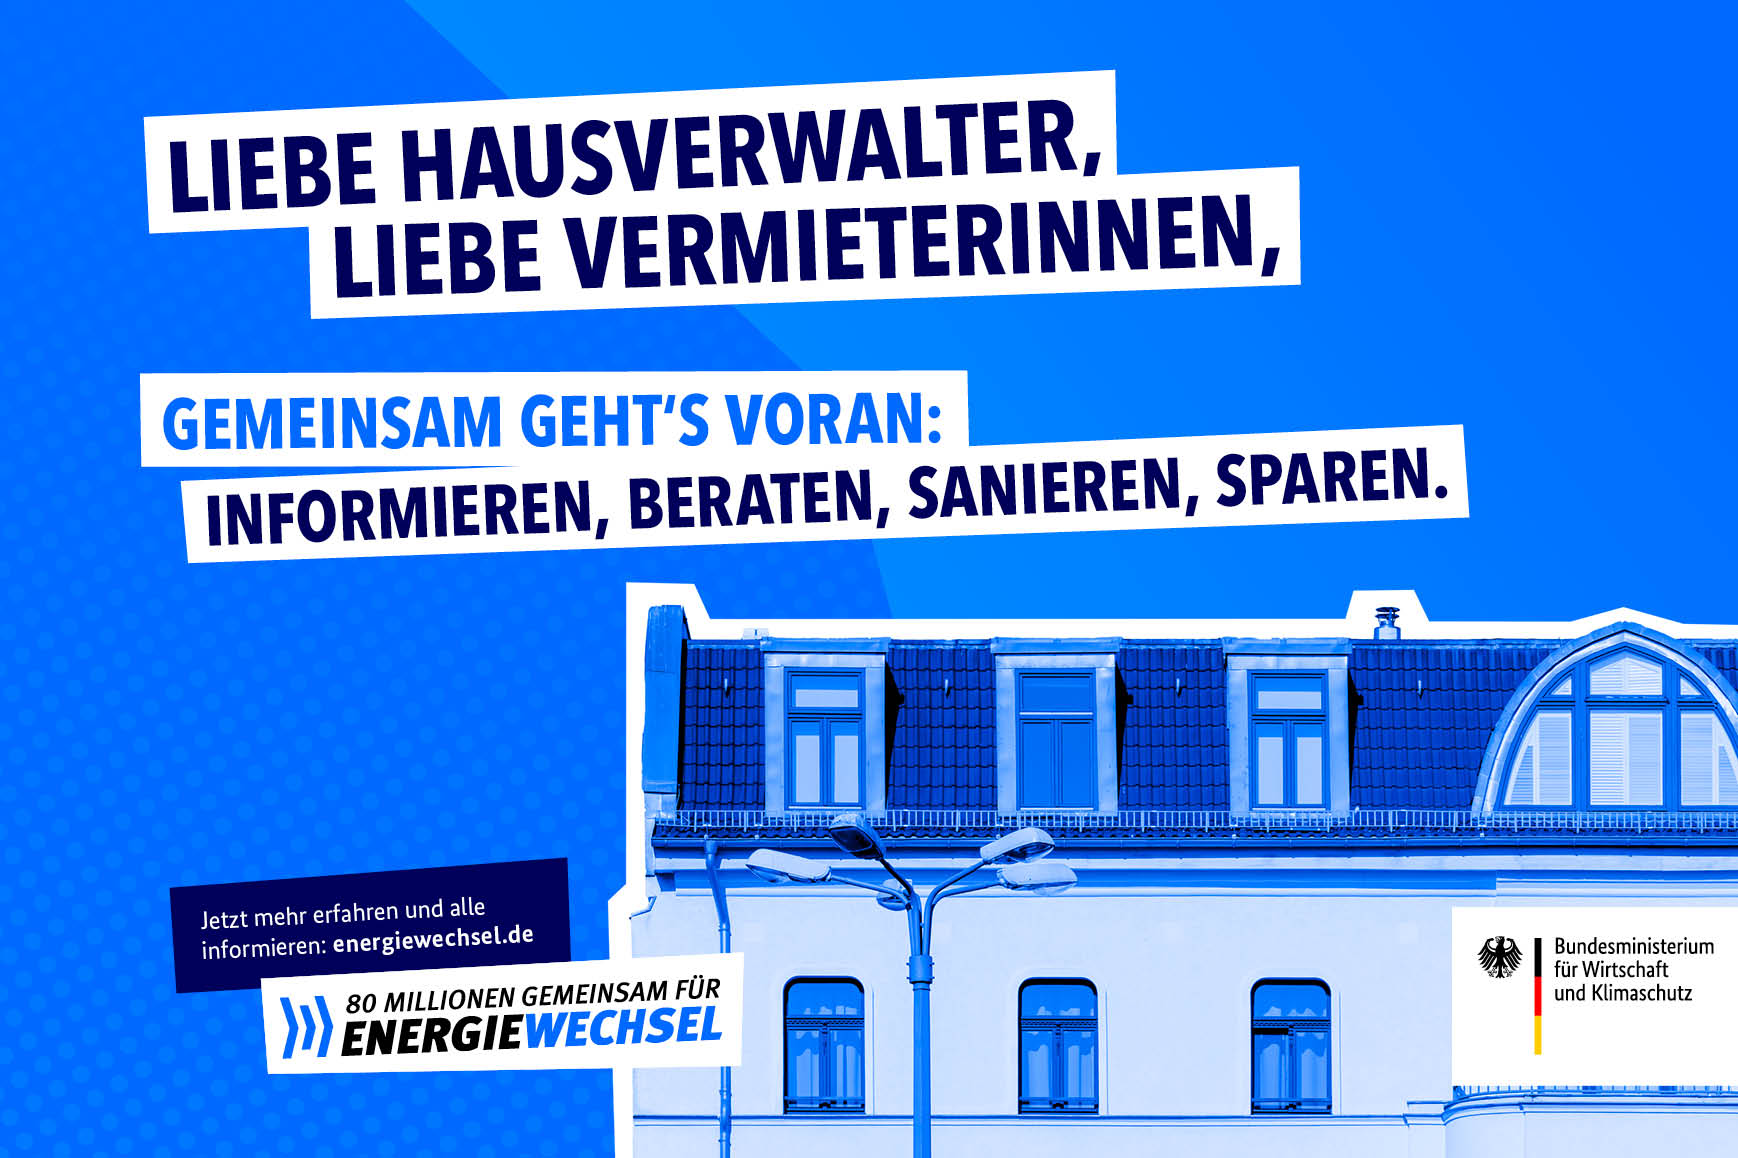 Kampagnenmotiv „Liebe Hausverwalter, liebe Vermieterinnen” | 80 Millionen gemeinsam für Energiewechsel